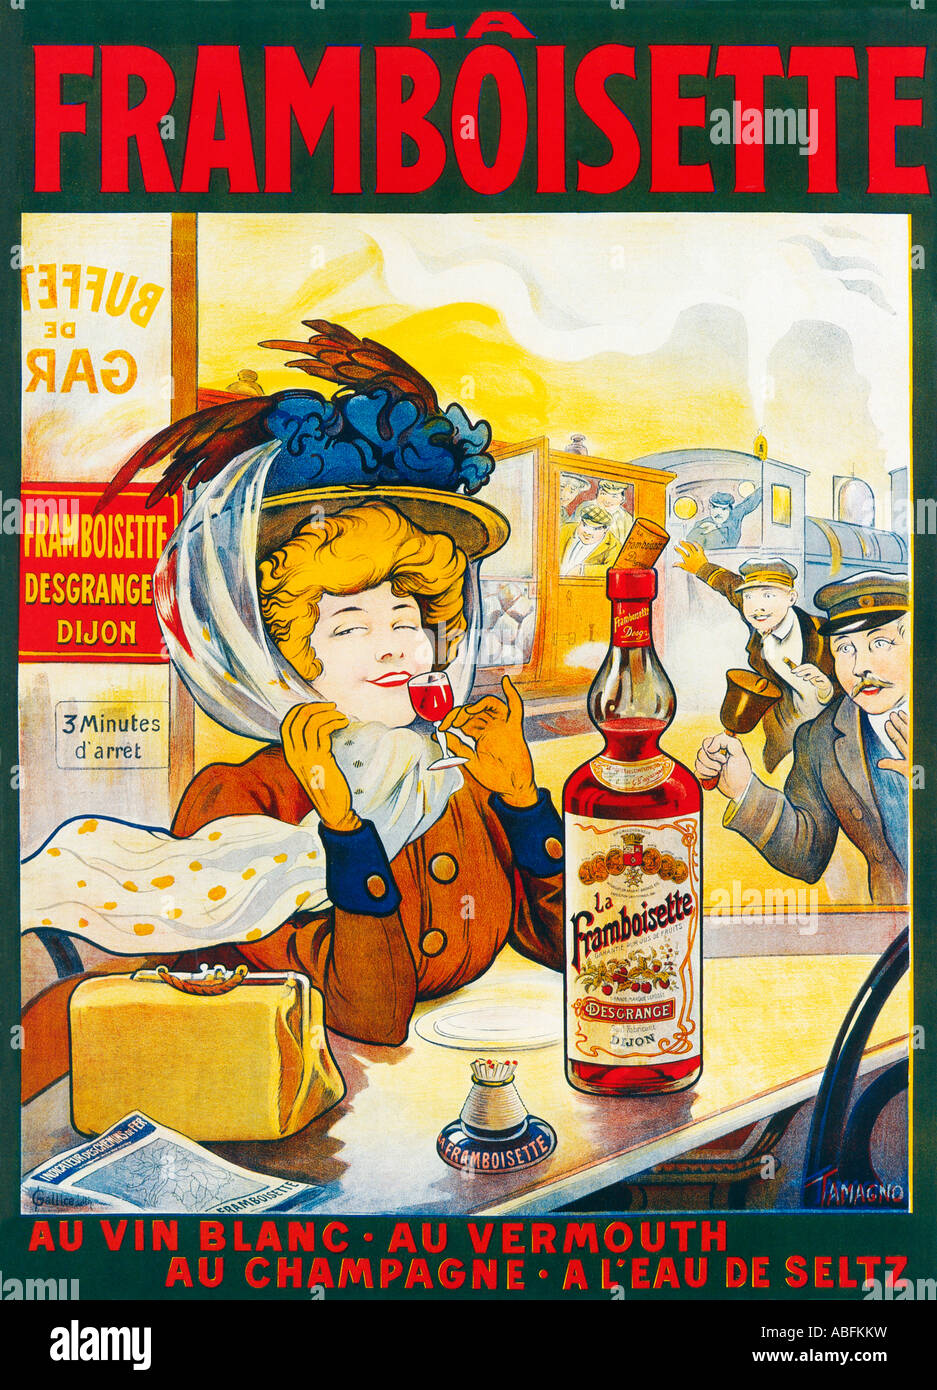 La Framboisette la liqueur de framboise de Dijon retarde le train comme il mérite plus que l'arrêt de 3 minutes pour l'apprécier Banque D'Images